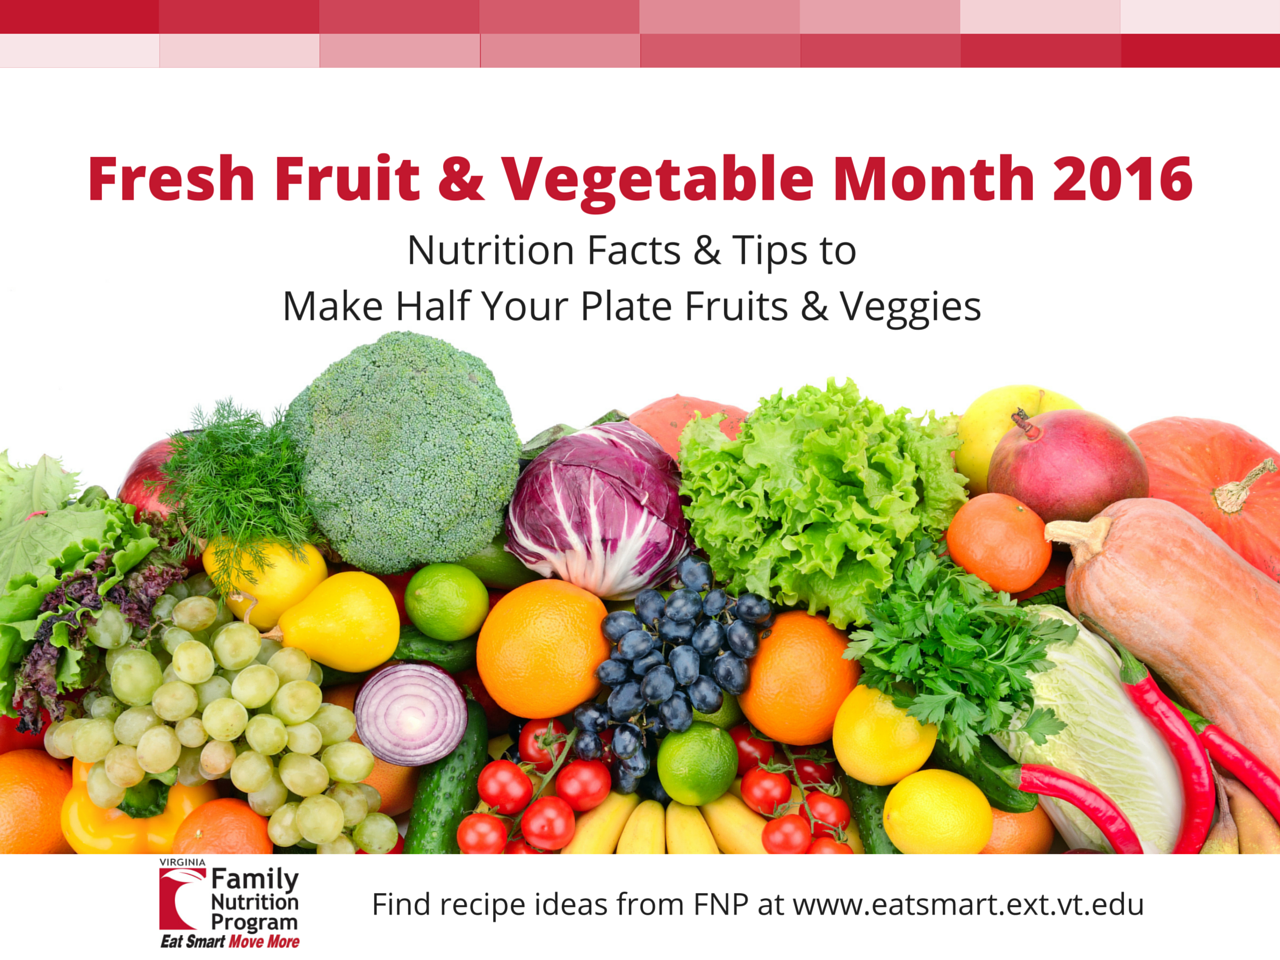 https://eatsmartmovemoreva.org/wp-content/uploads/2016/06/Fresh-Fruit-Vegetable-Month-2016-2.png